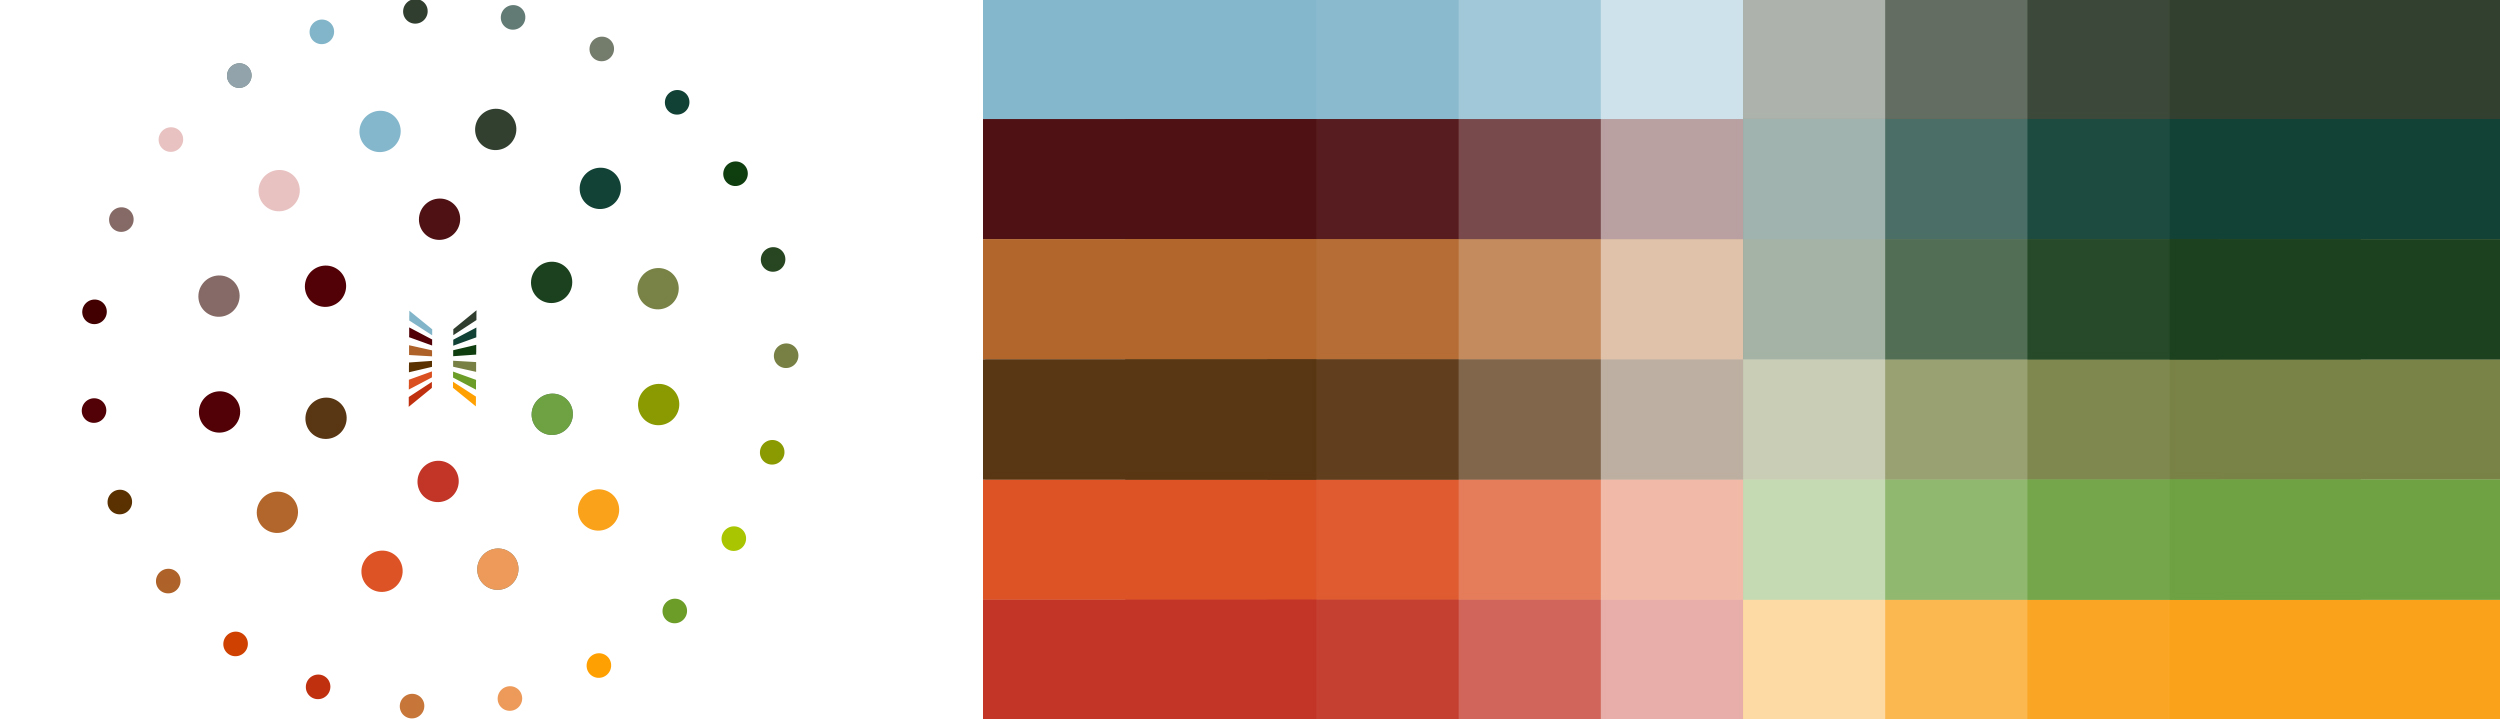 chs_color-spectrum_2